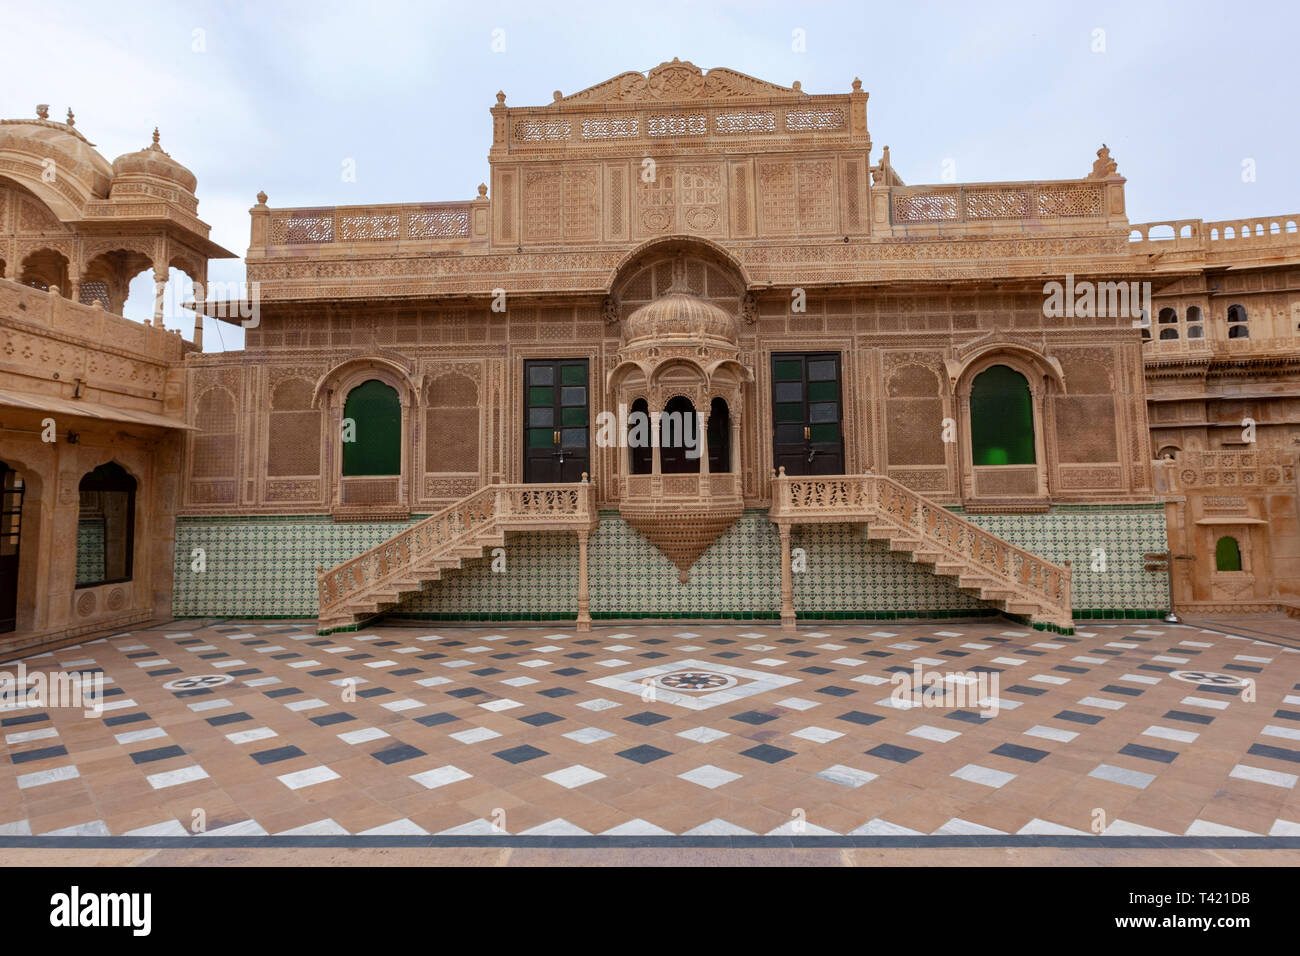 Mandir Palace Darbar Hall with ornate sandstone façade, Jaisalmer, Rajasthan, India Stock Photo